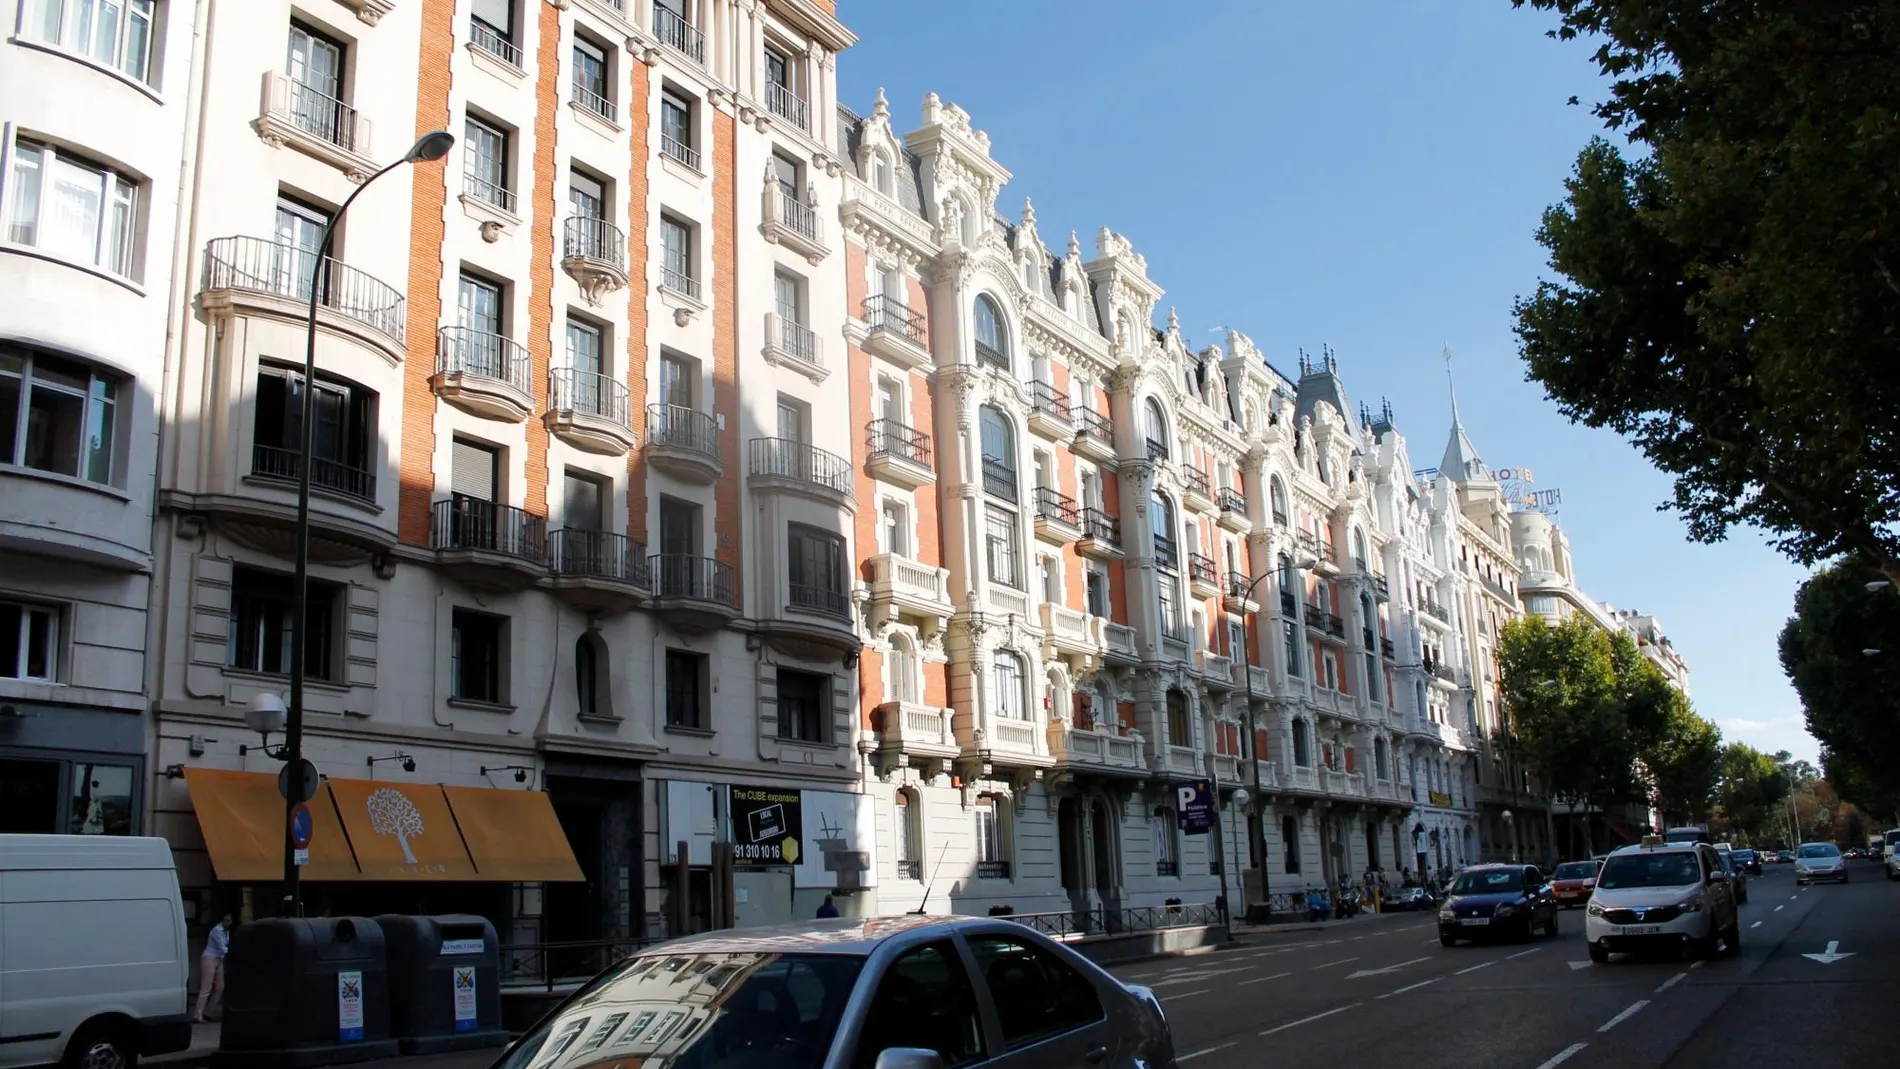 La madrileña Serrano es la segunda calle española donde es más caro alquilar una vivienda, con un precio de 35 euros por metro cuadrado / Foto: Andrea Sánchez